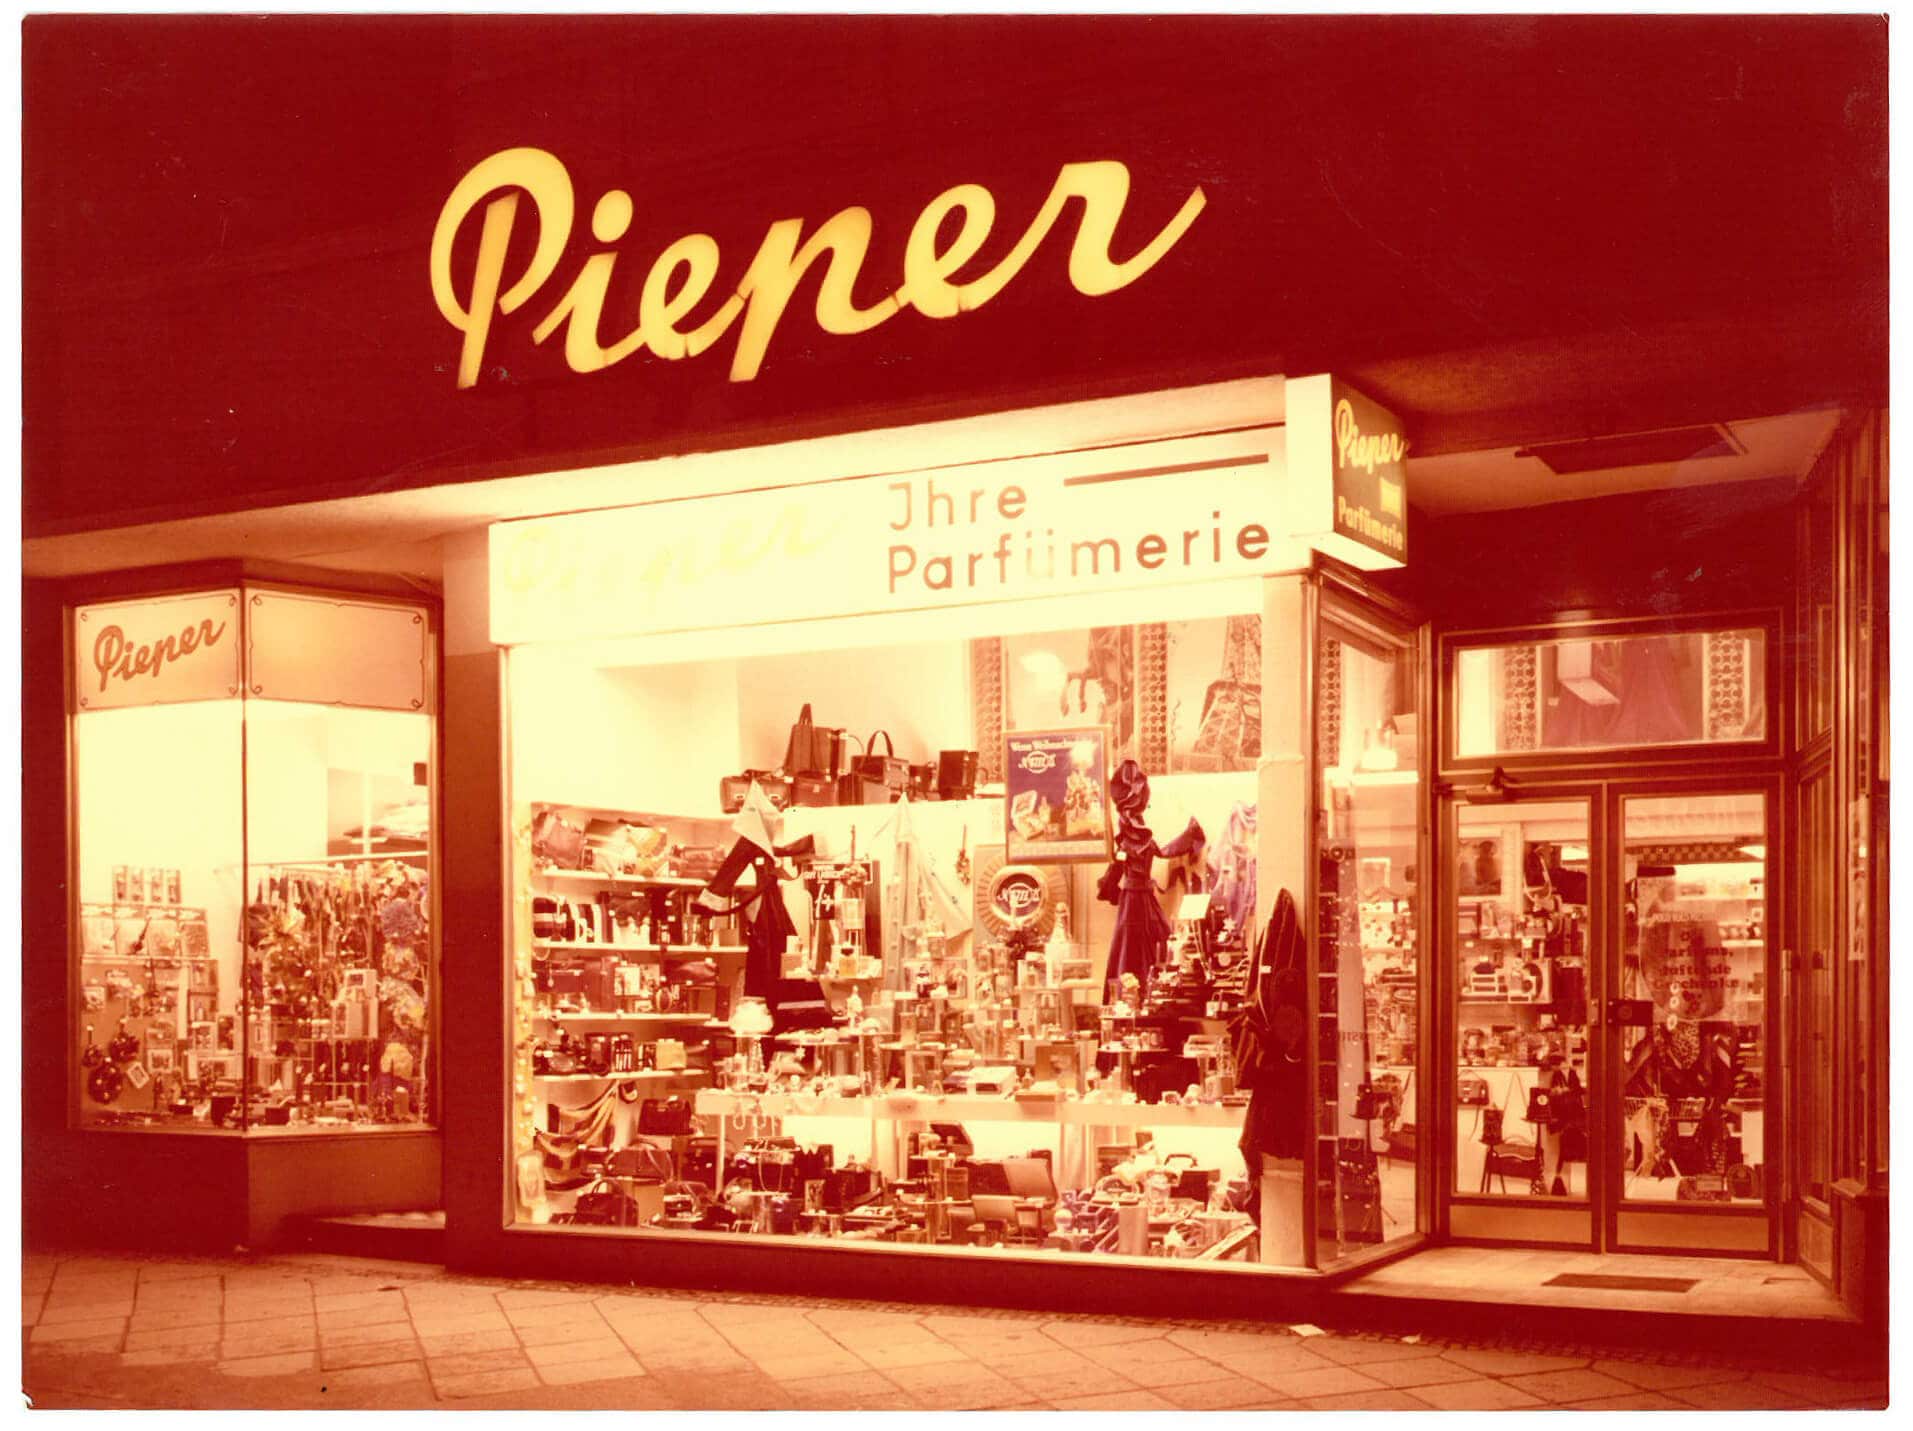 Parfumerie-Pieper_1968_2